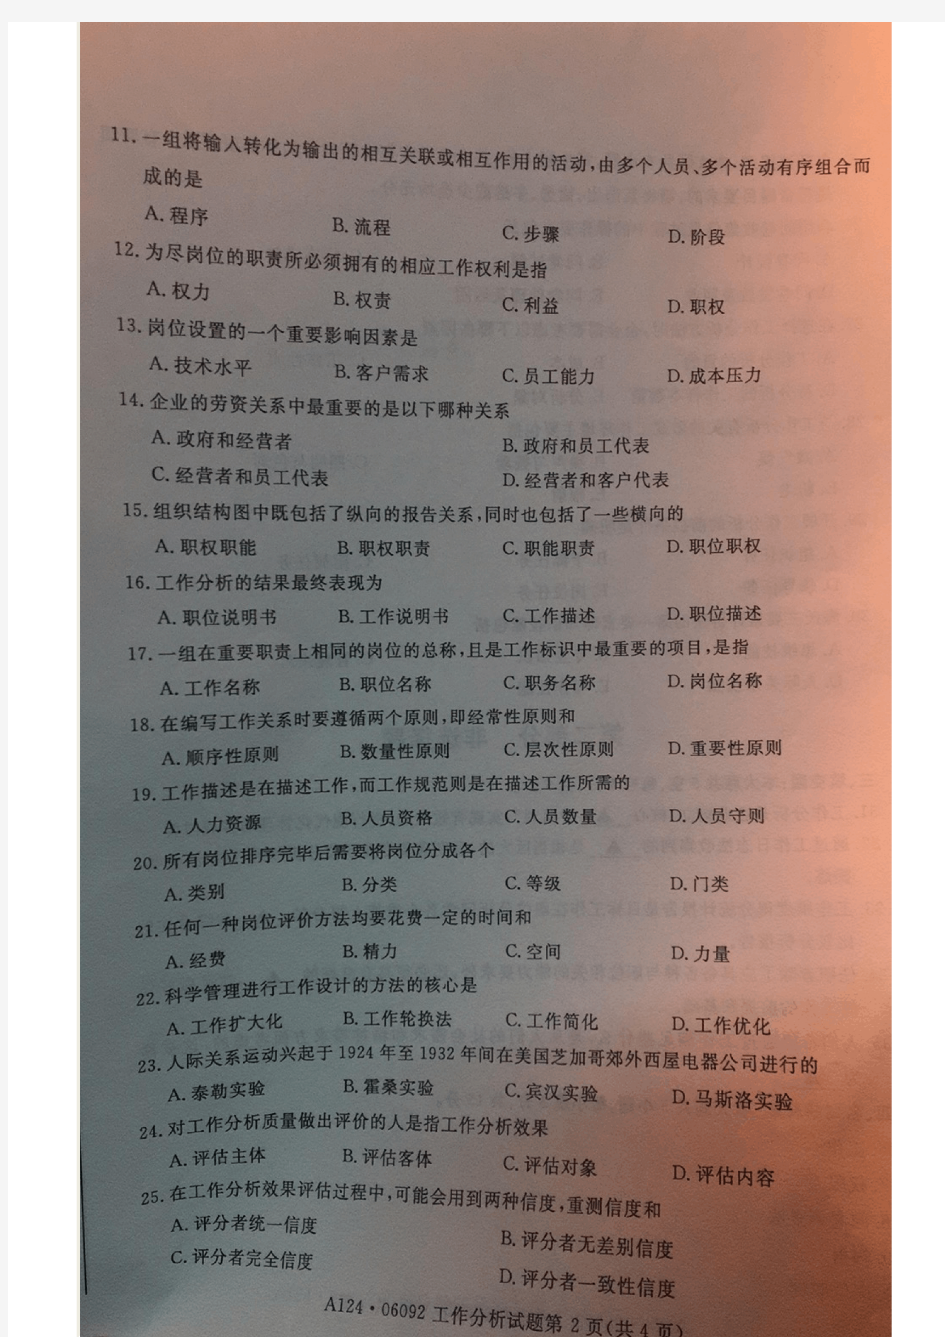 江苏自考(06092)工作分析真题及答案15年到19年10月共计7套